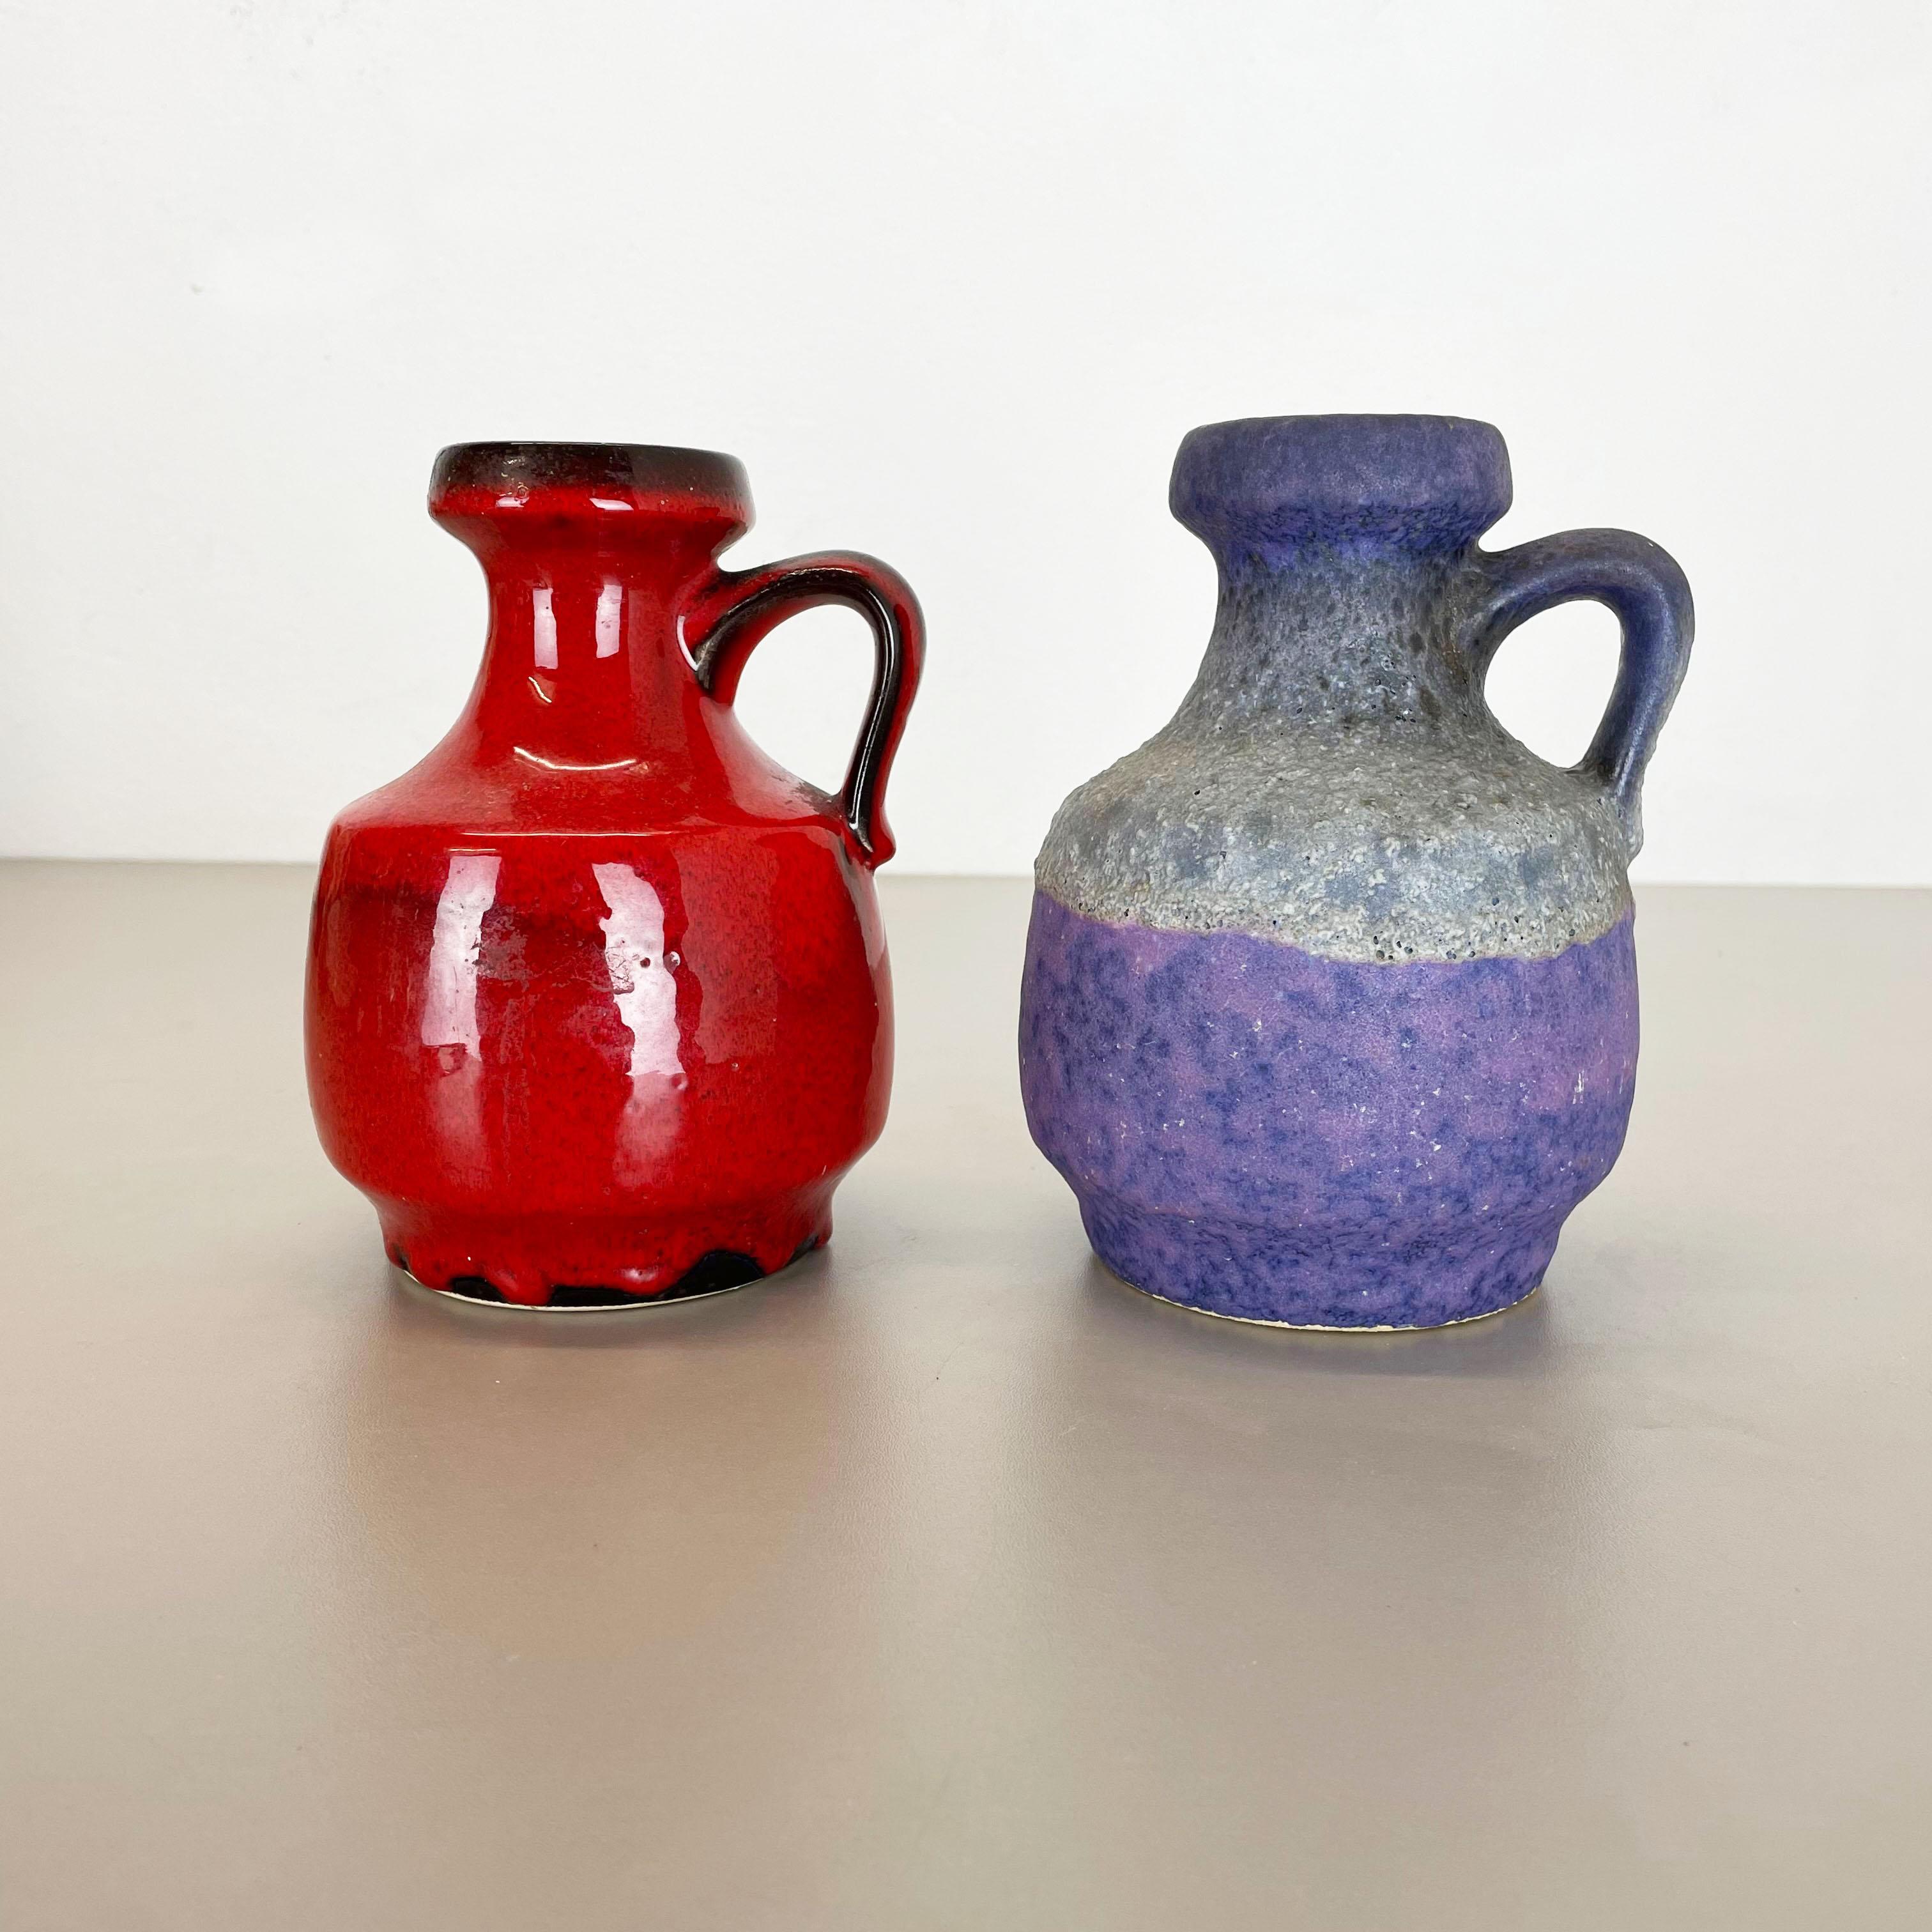 Artikel:

Set aus zwei fetten Lavakunstvasen

Modell:
020/16




Produzent:

Jopeko-Keramik, Deutschland



Jahrzehnt:

1970s




Diese originalen Vintage-Vasen wurden in den 1970er Jahren in Deutschland hergestellt. Sie ist